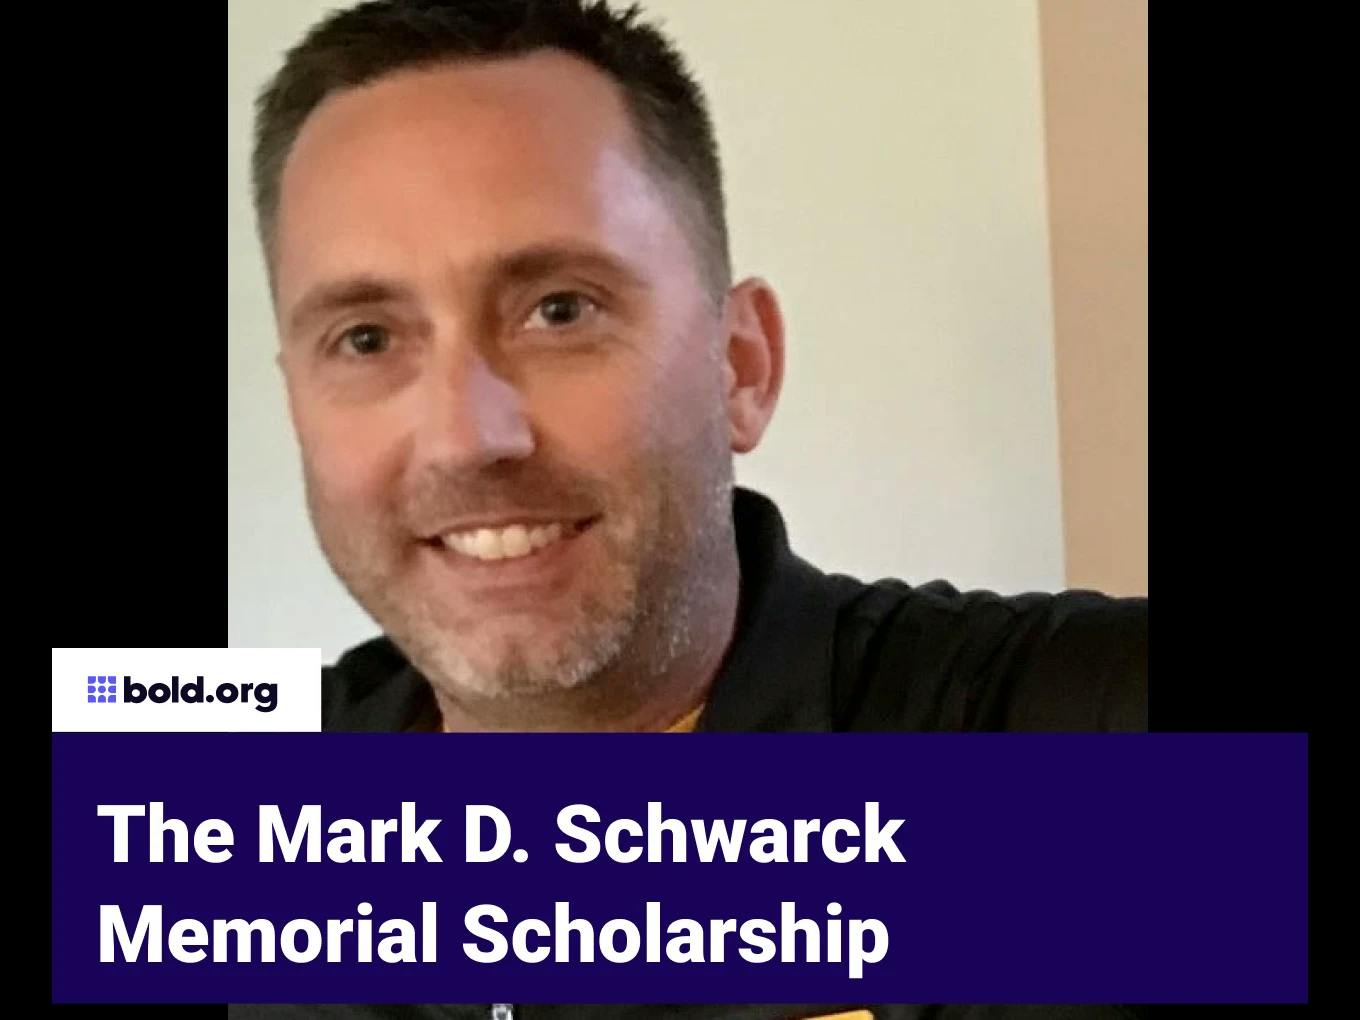 Mark D. Schwarck Memorial Scholarship